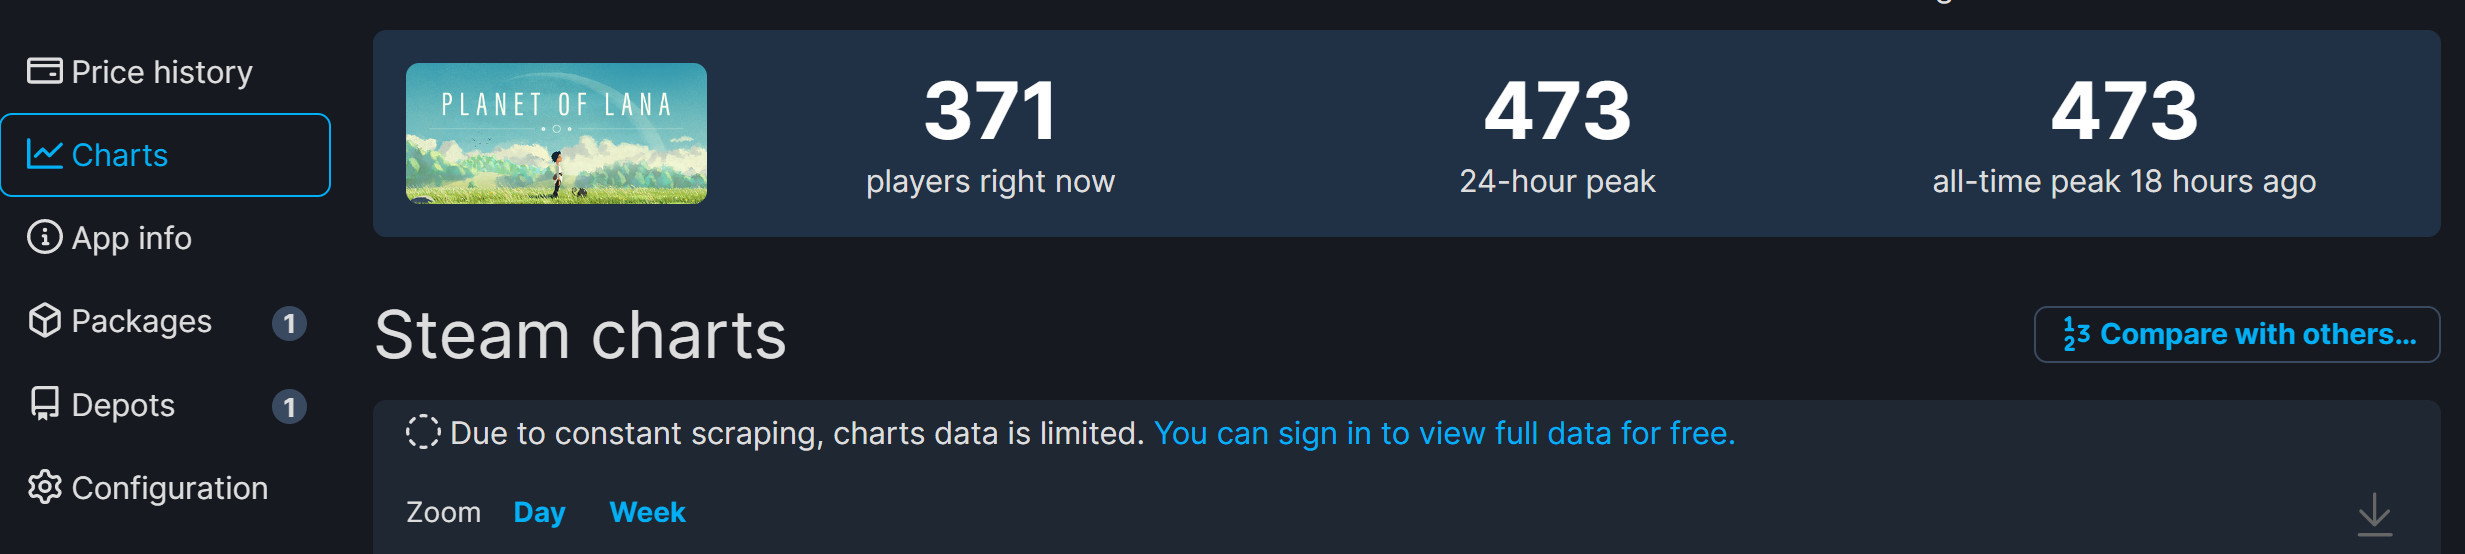 《拉娜的星球》Steam特别好评 但峰值仅473人-第1张